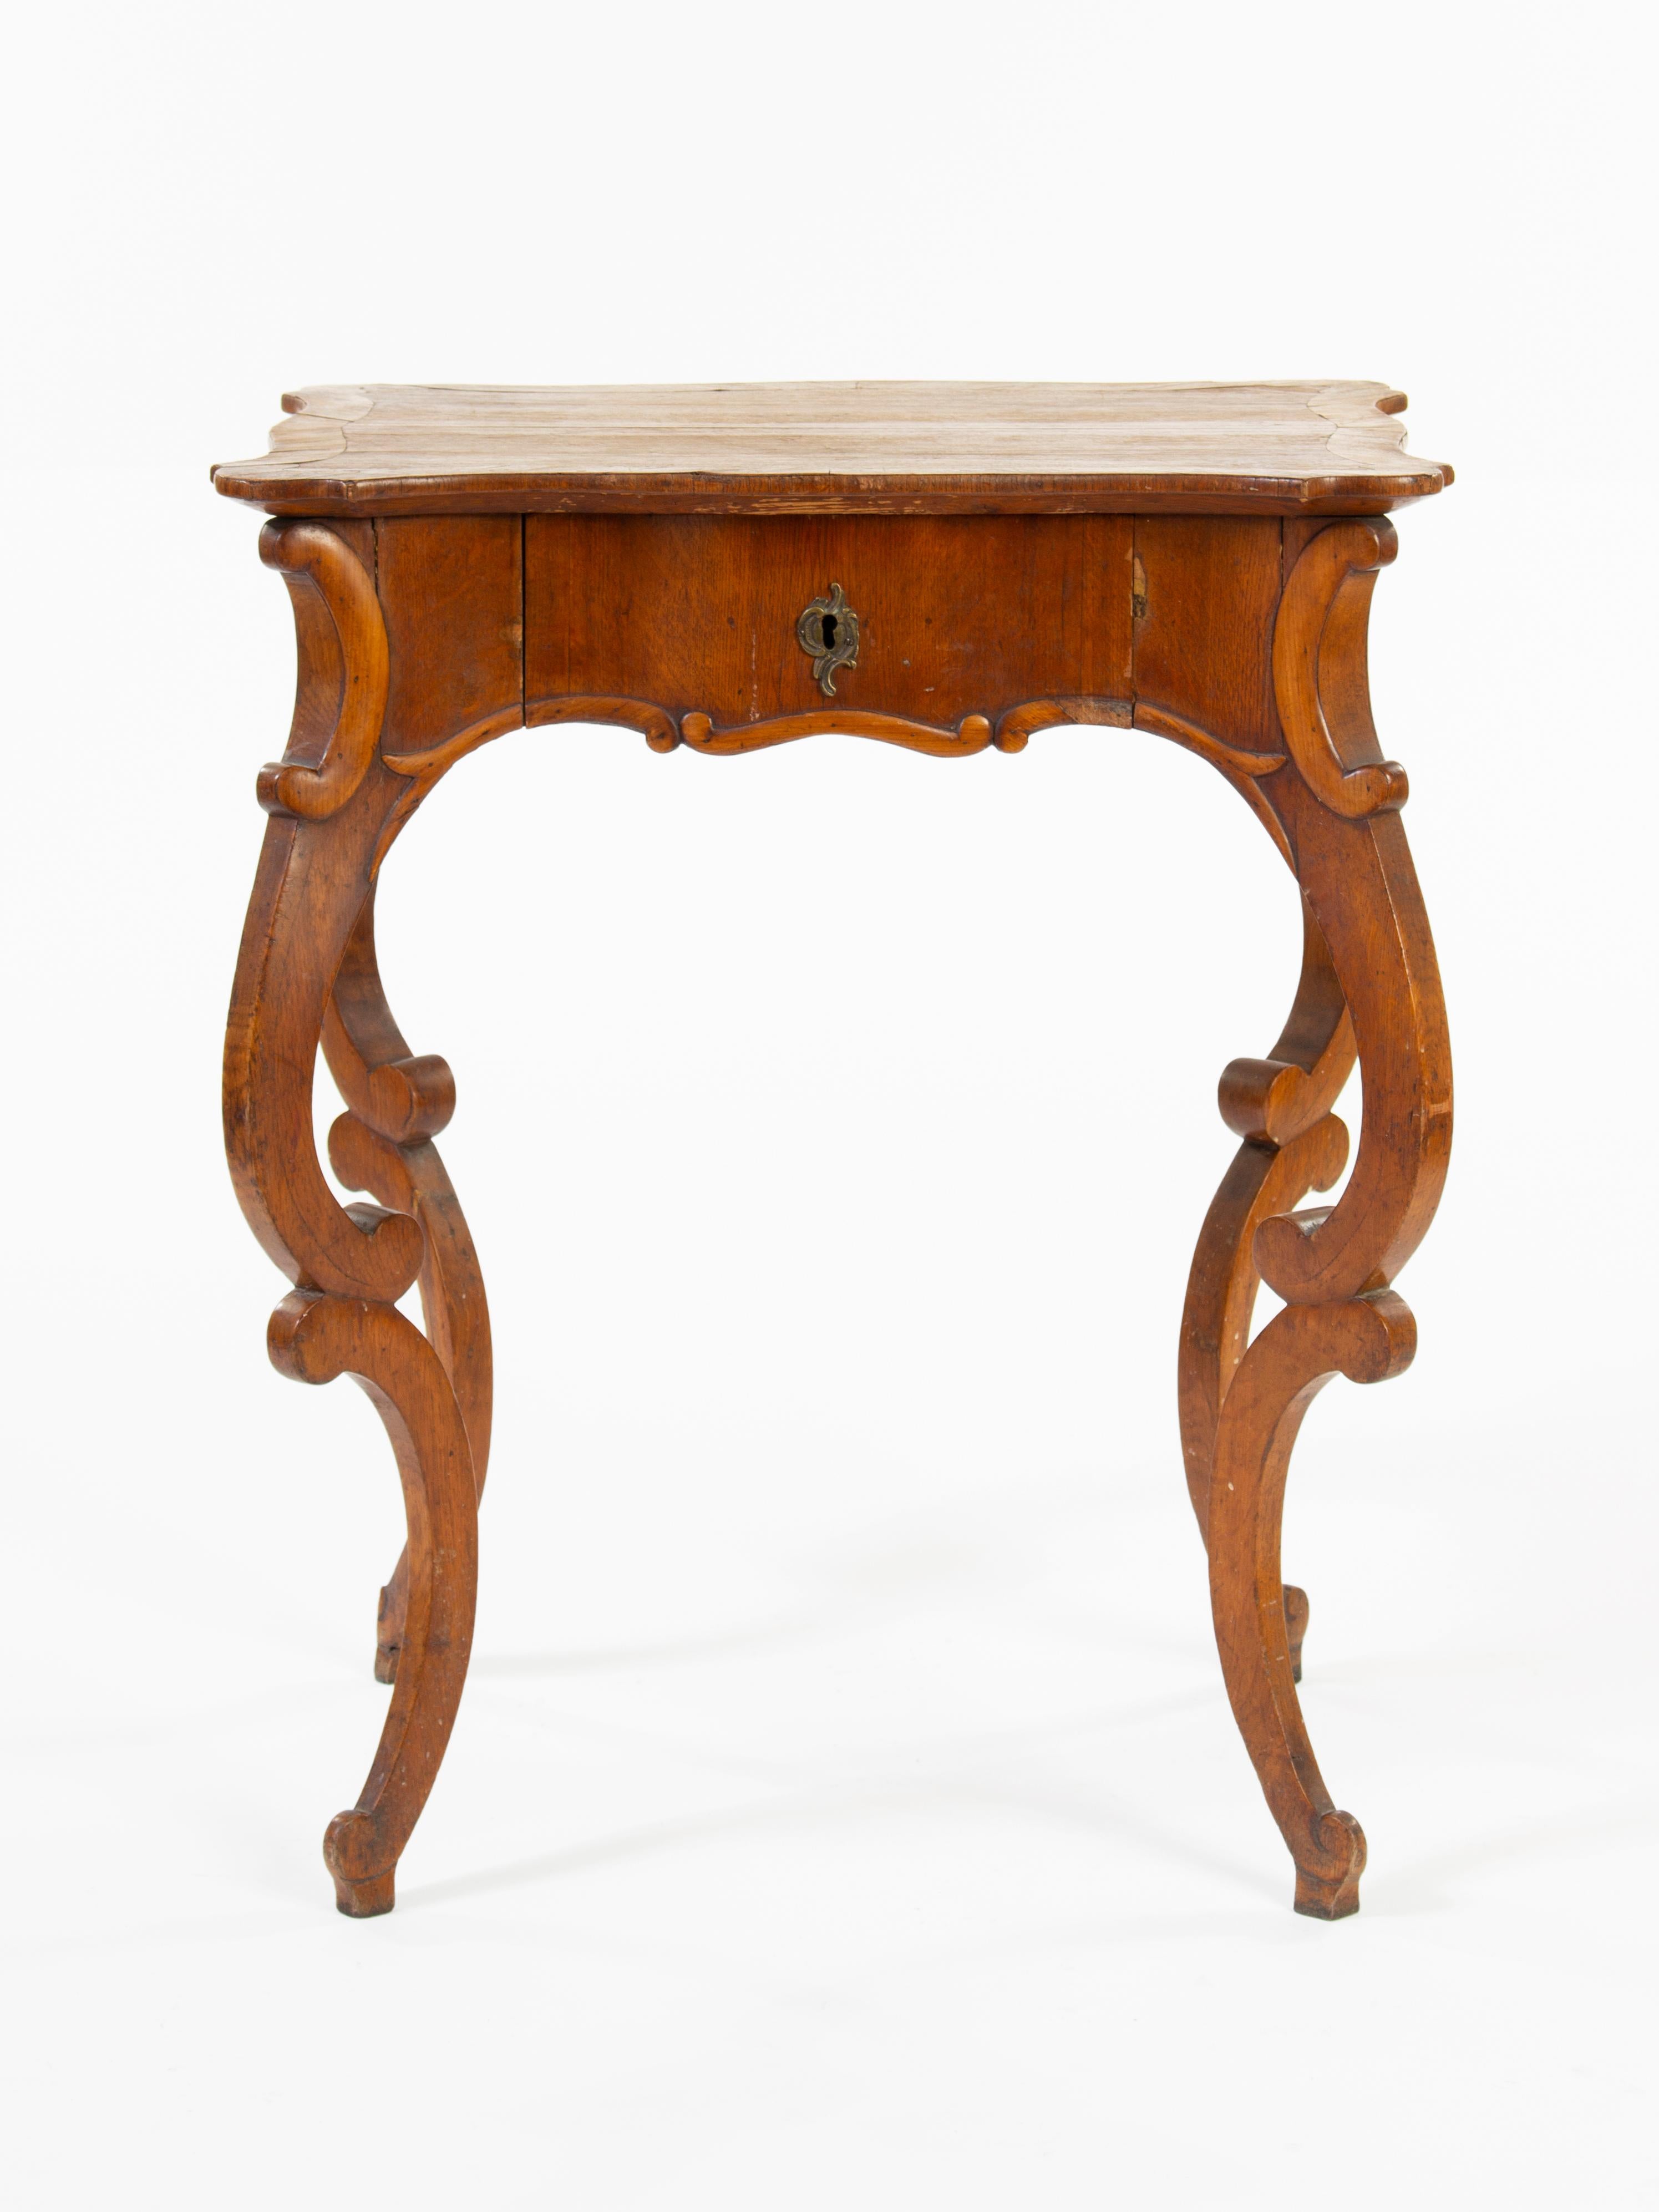 La table Louis Philippe Rococo est un meuble élégant et sophistiqué, généralement fabriqué à partir d'acajou ou d'autres bois riches. Ces tables se caractérisent généralement par des détails en relief ou sculptés, ainsi que par une grande finesse